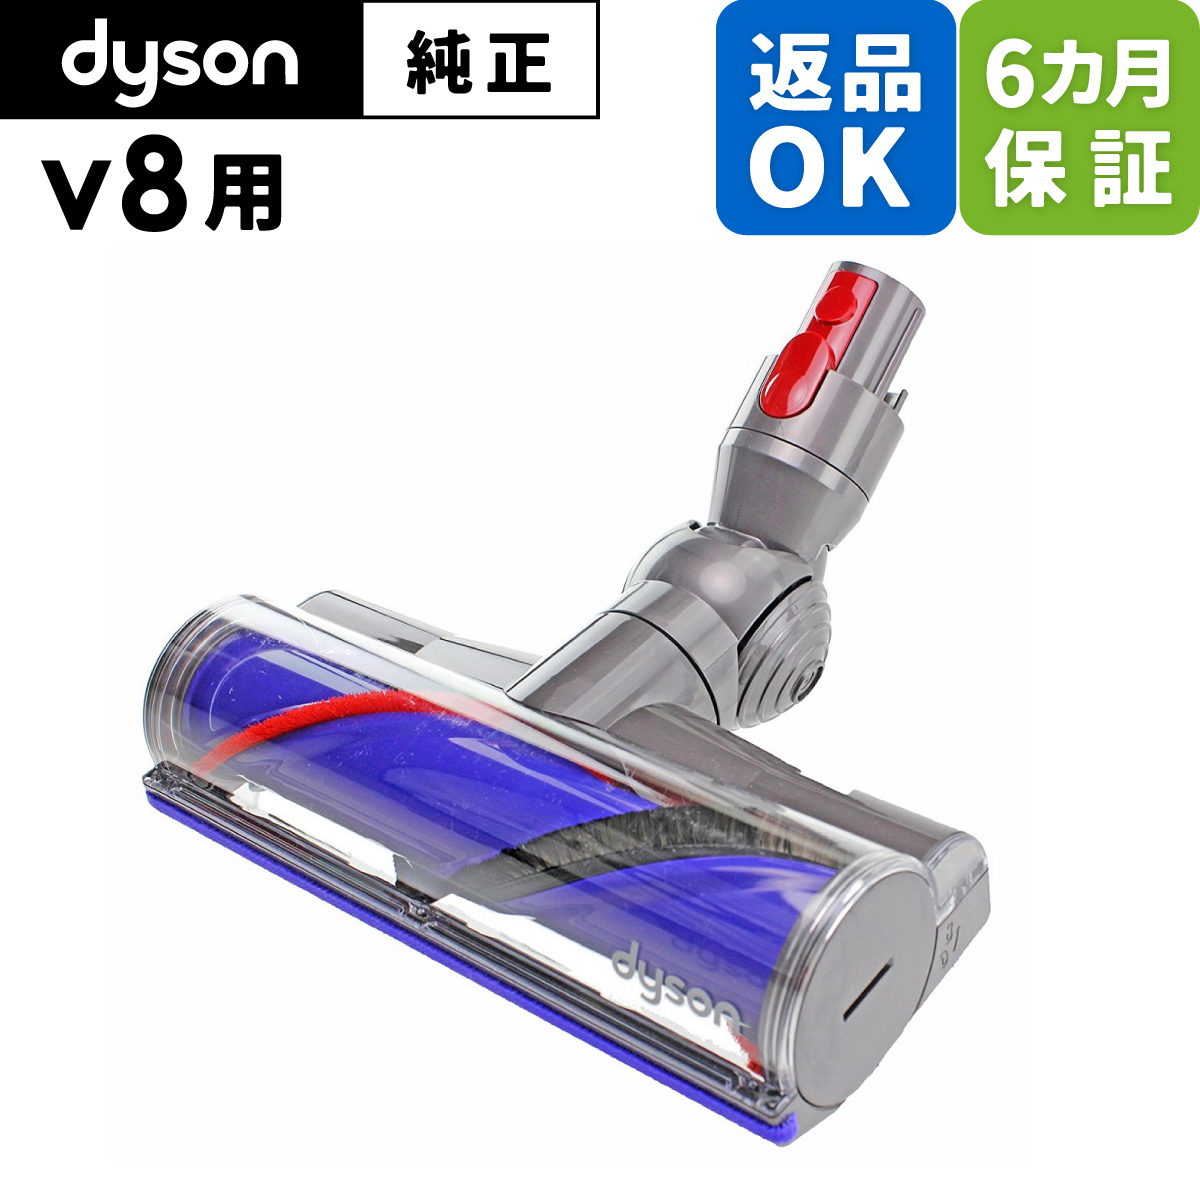 生活家電 掃除機 ダイソン Dyson V8 ダイレクトドライブクリーナーヘッド (掃除機パーツ 